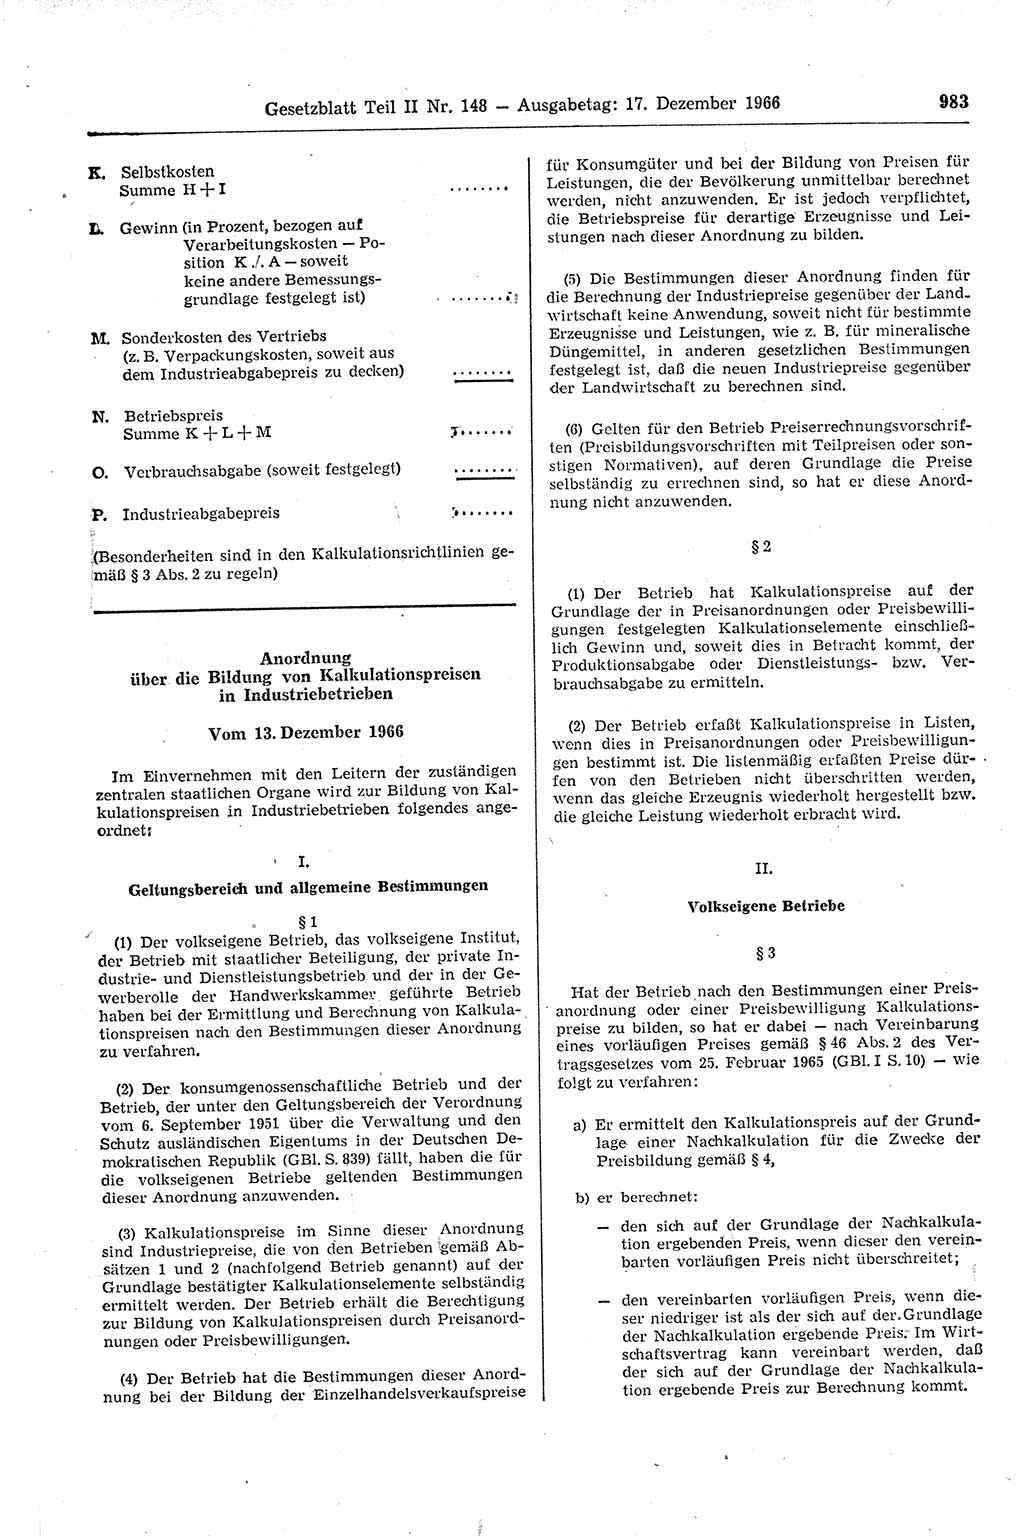 Gesetzblatt (GBl.) der Deutschen Demokratischen Republik (DDR) Teil ⅠⅠ 1966, Seite 983 (GBl. DDR ⅠⅠ 1966, S. 983)